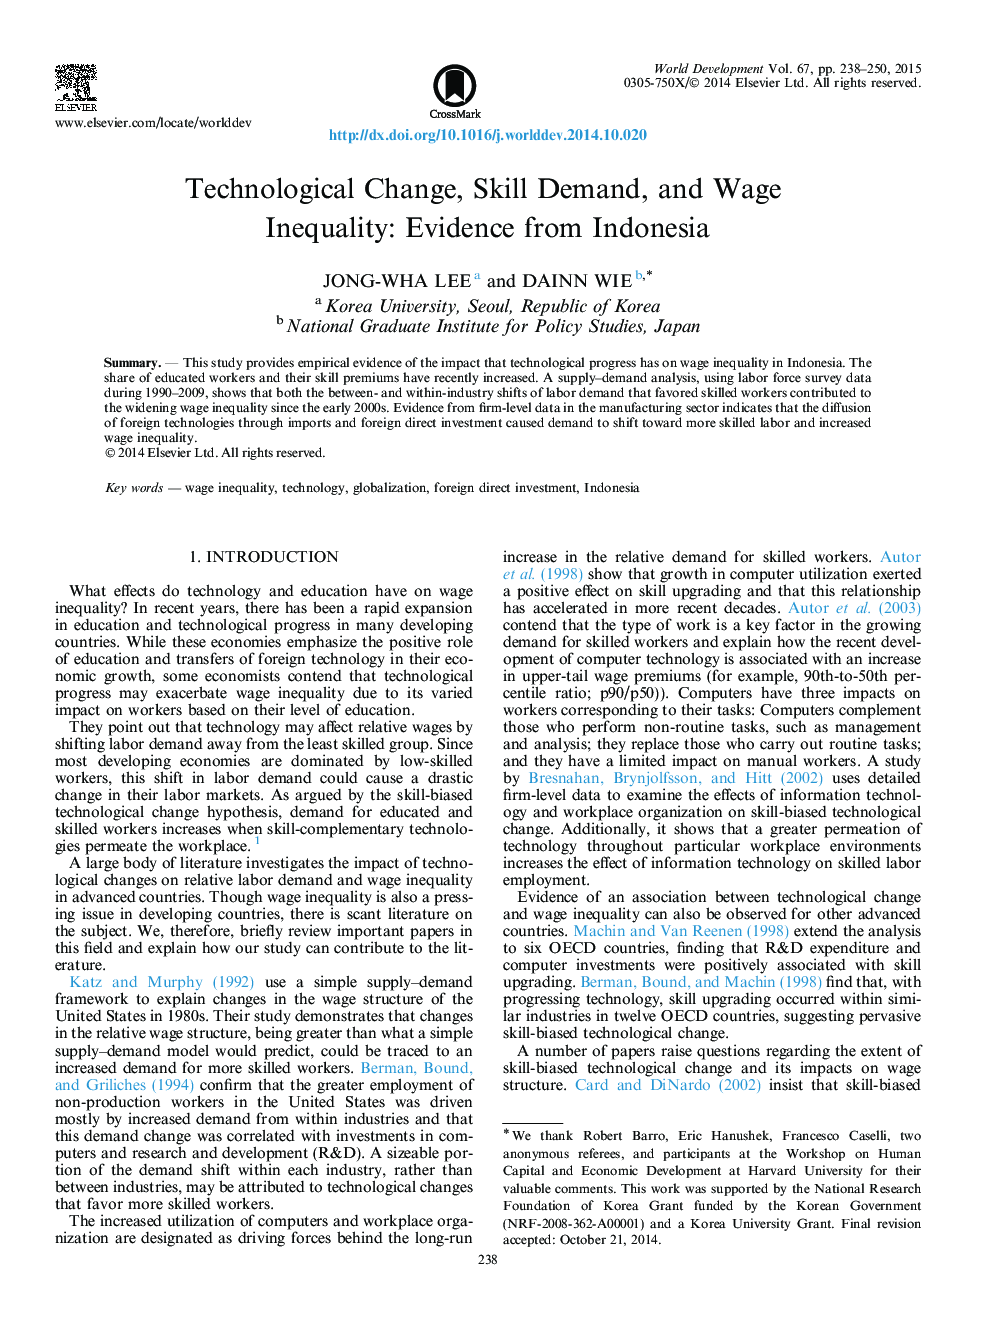 تغییر تکنولوژی، تقاضای مهارت و نابرابری دستمزد: شواهد از اندونزی 